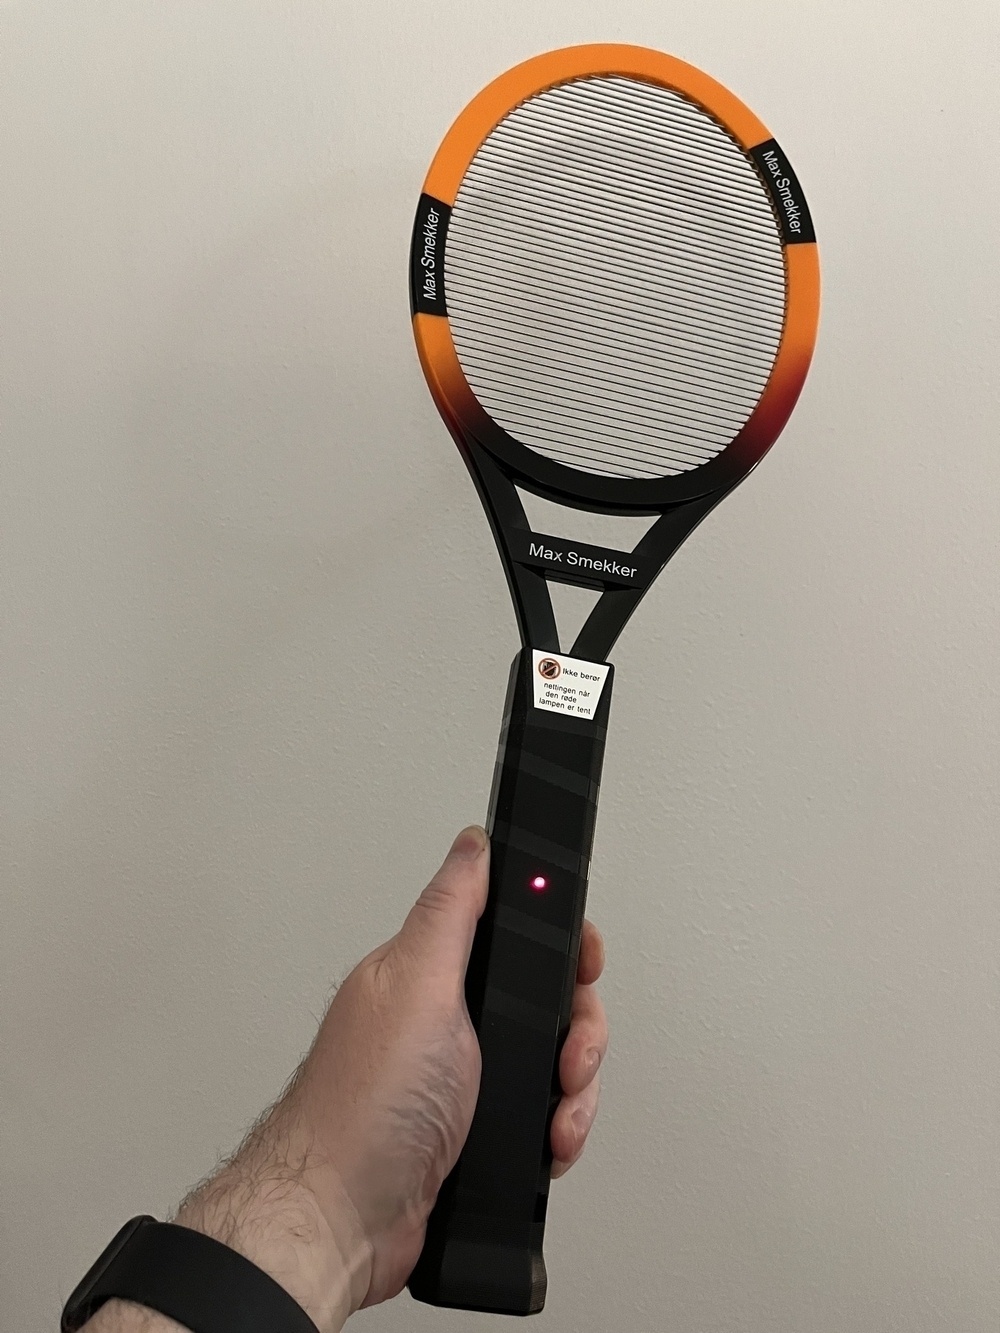 Racket shaped fly zapper.